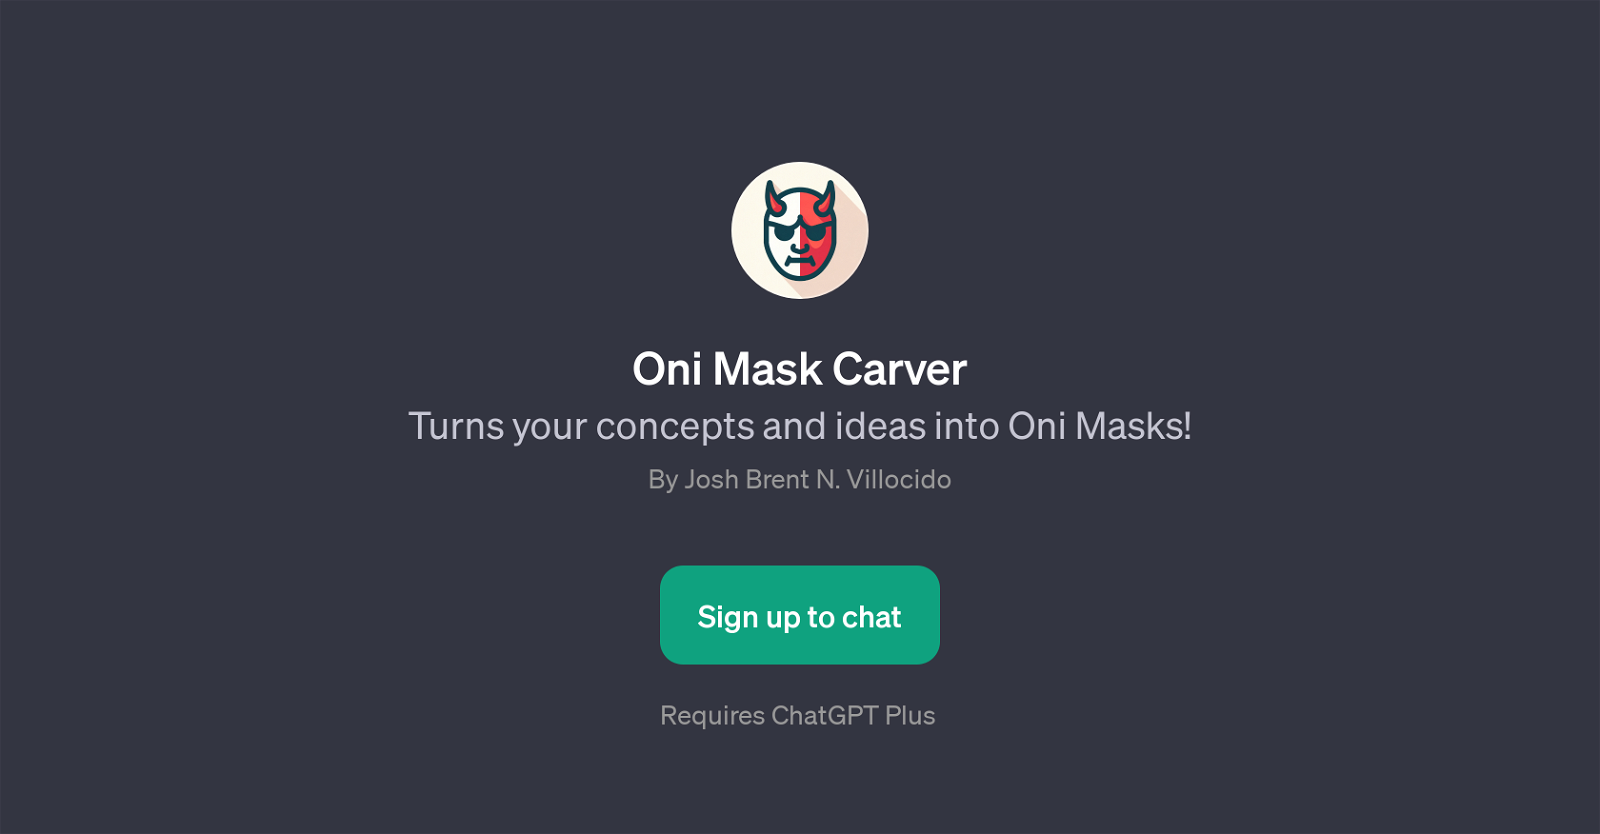 Oni Mask Carver website